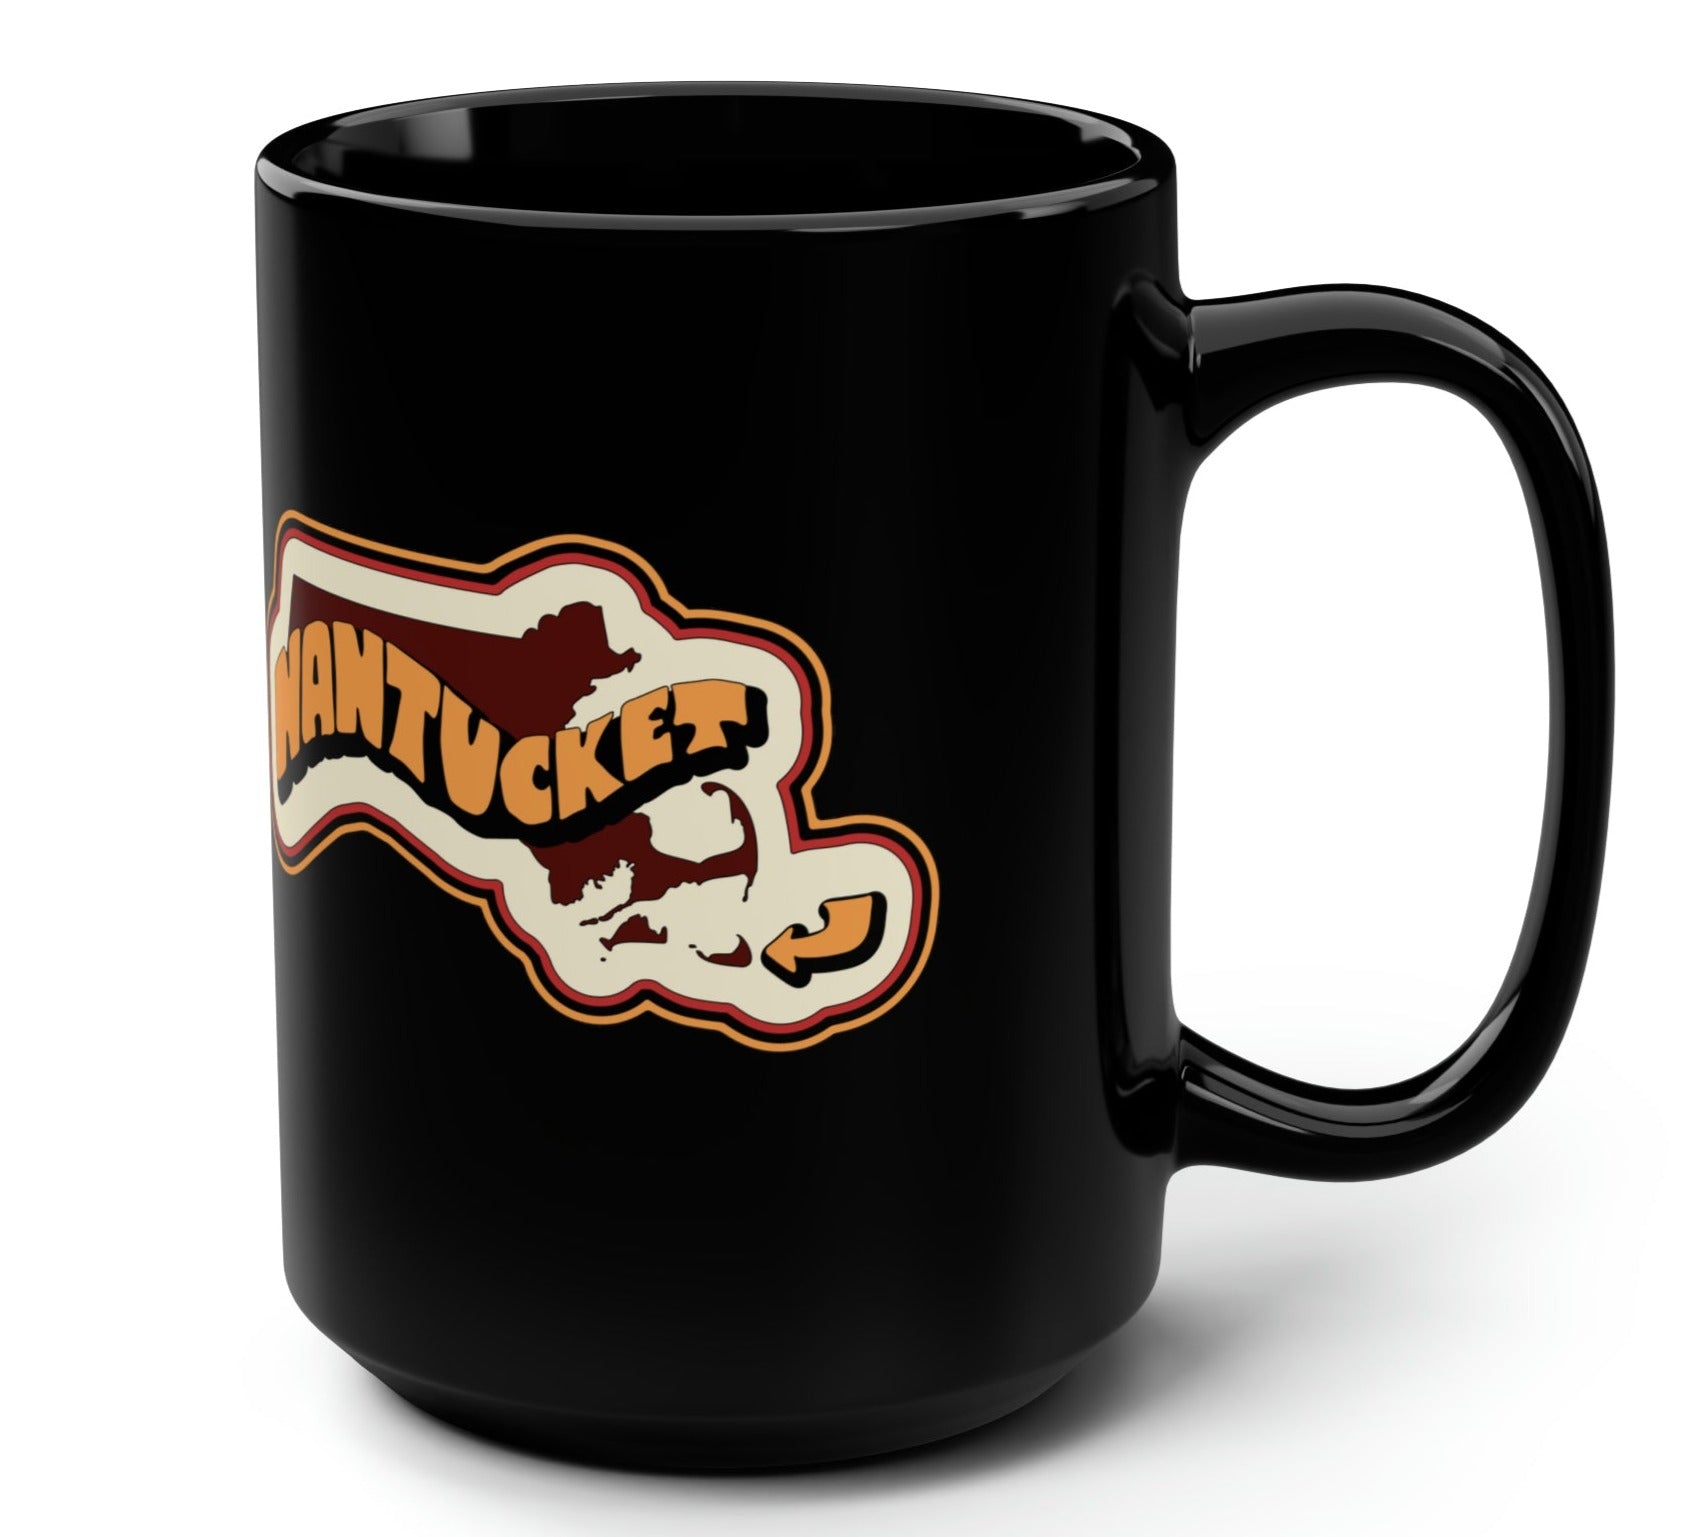 nantucket mass coffee mug context 3